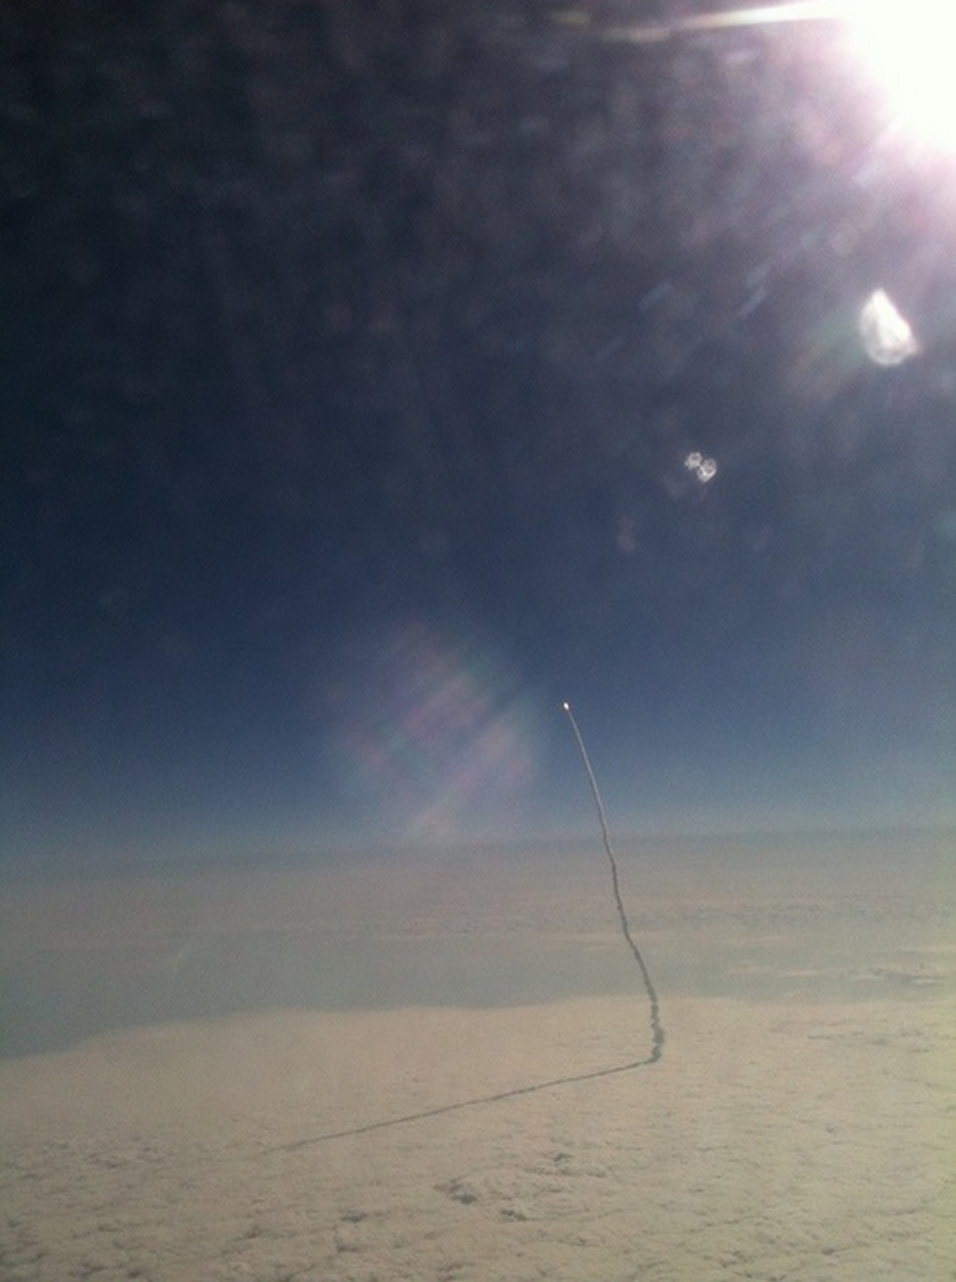 4. 一位飛機乘客Stefanie Gordon用iPhone拍下了 奮進號太空梭(Endeavour )正在飛向宇宙的瞬間。<BR><BR>